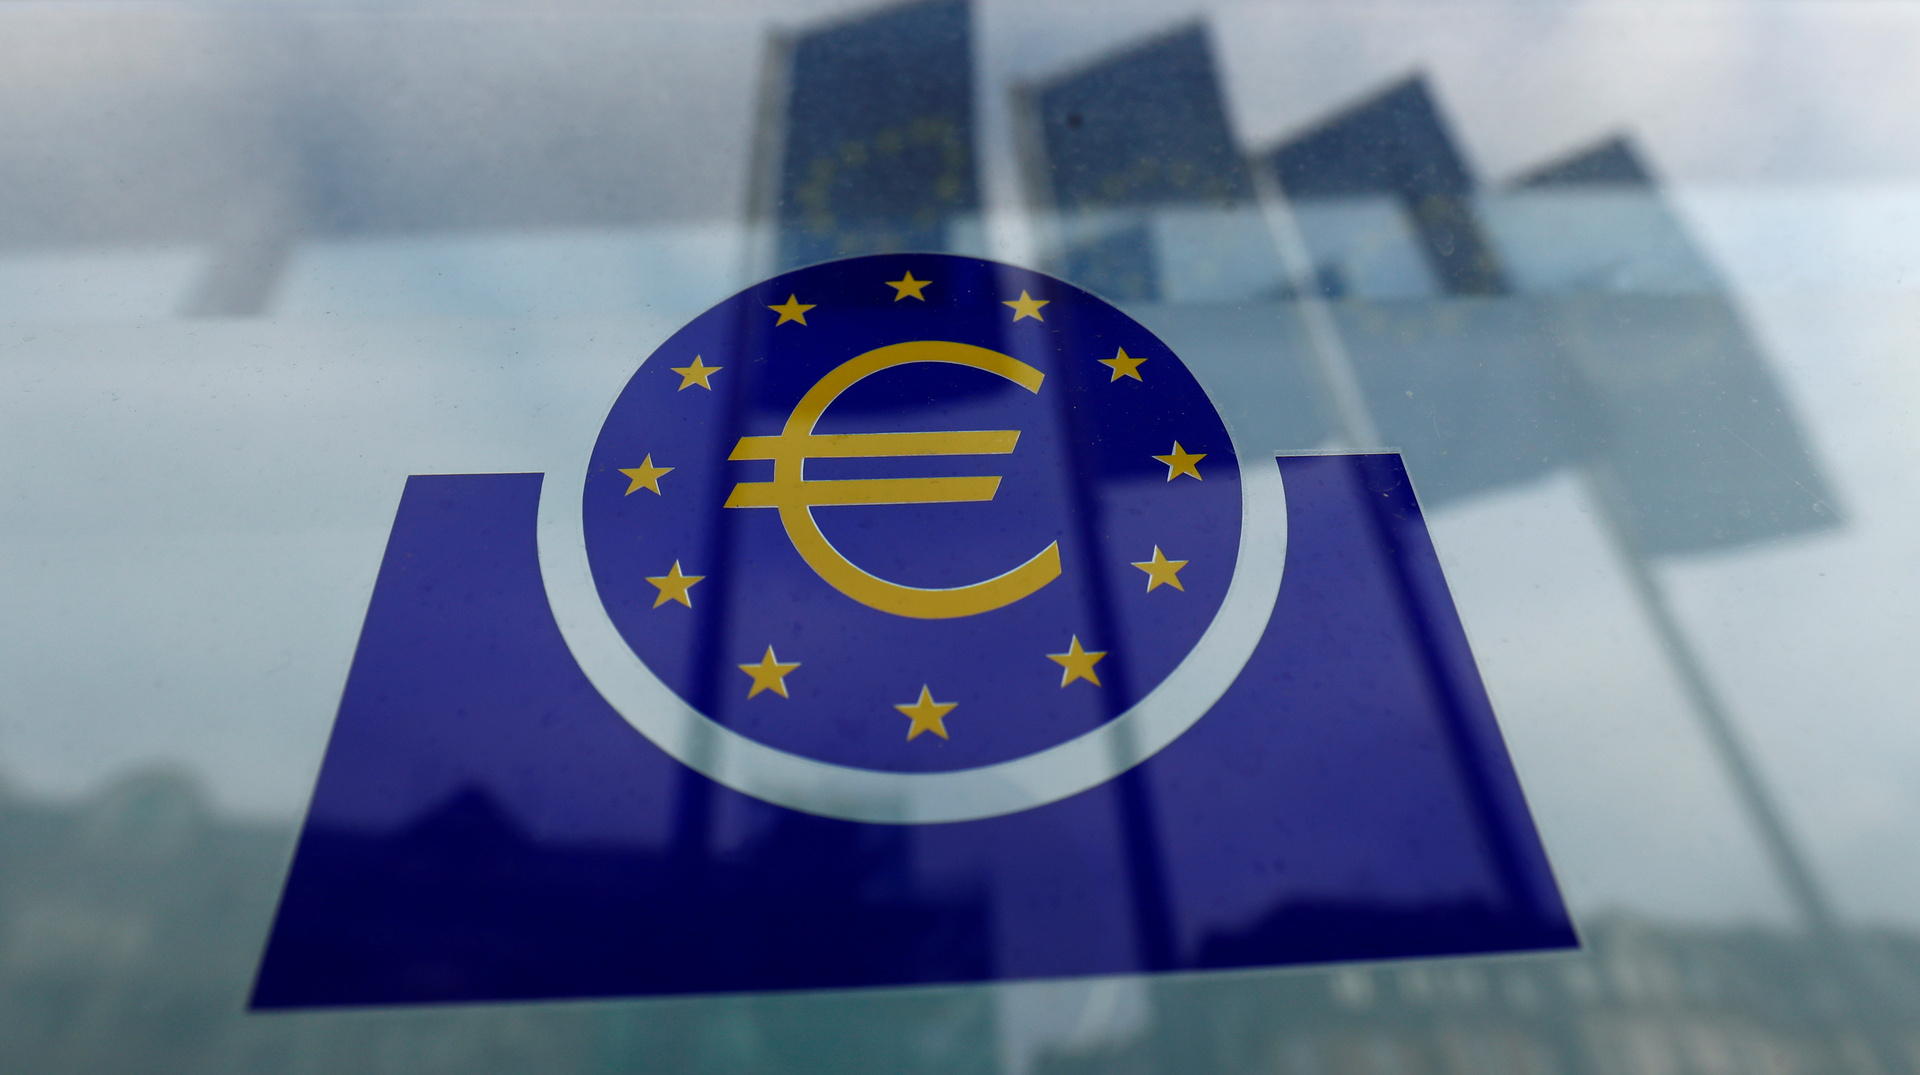 المركزي الأوروبي يطلق برنامجا بـ750 مليار يورو لدعم الاقتصاد